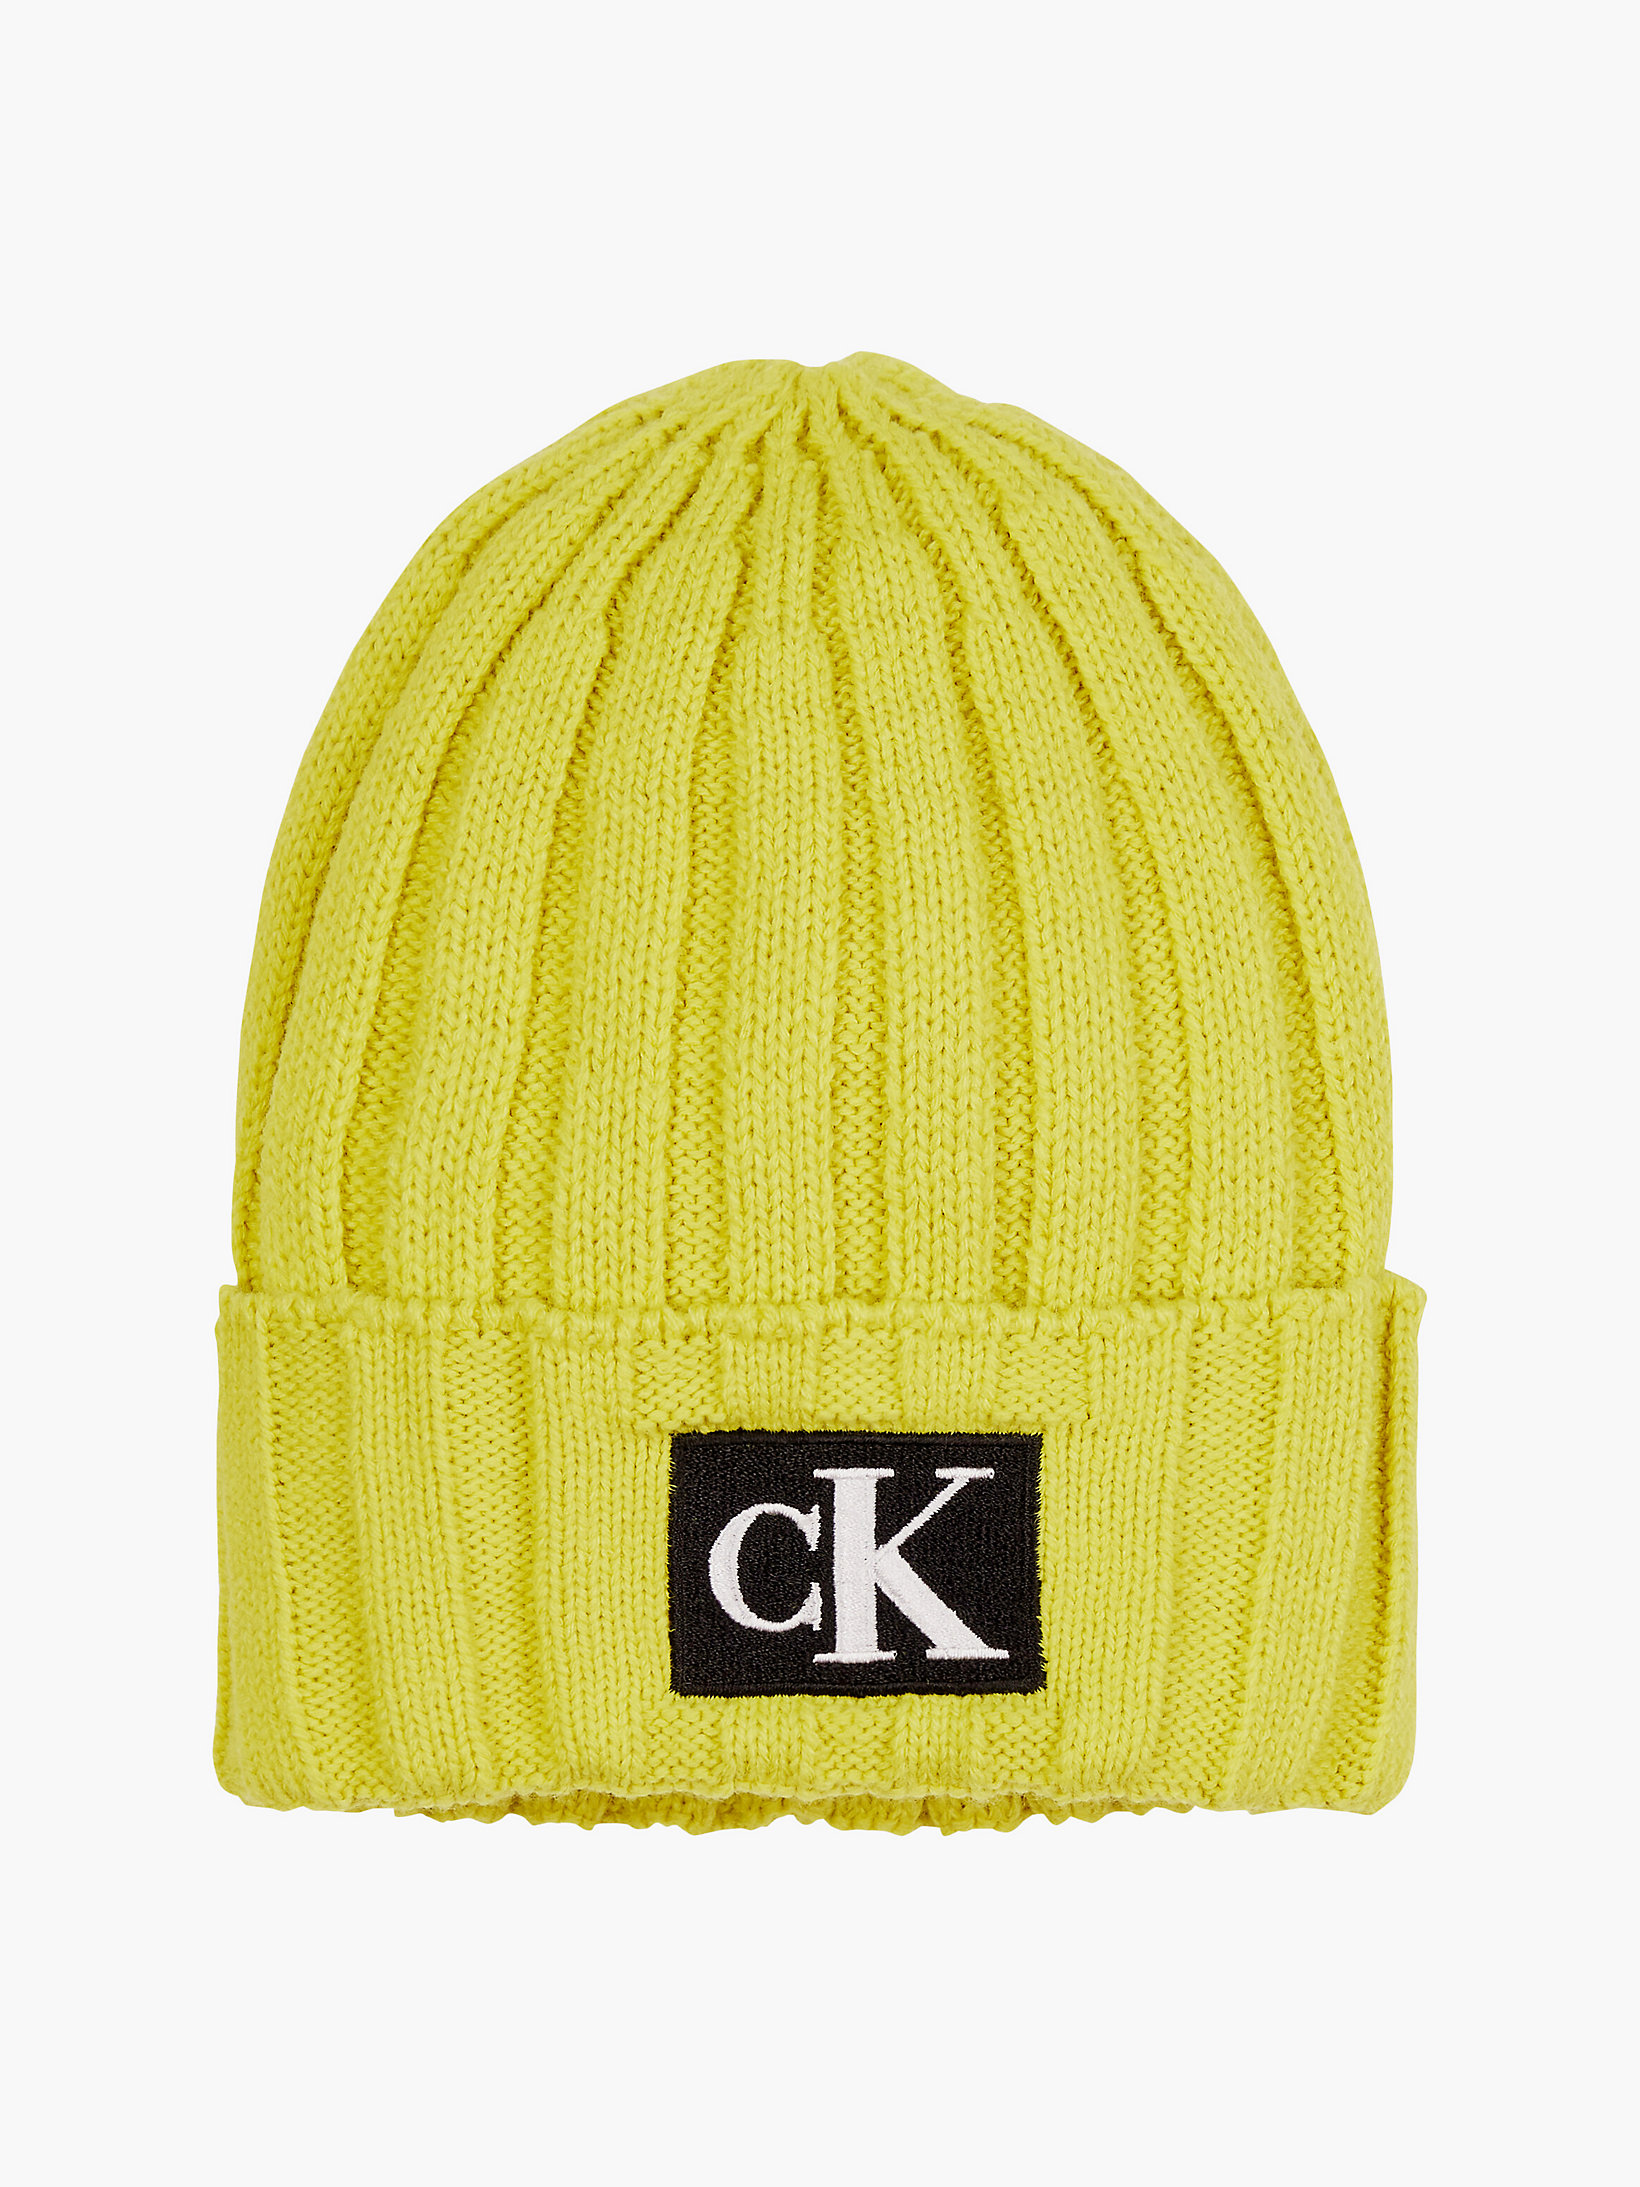 Dune Yellow > Вязаная репсовая шапка унисекс > undefined kids unisex - Calvin Klein